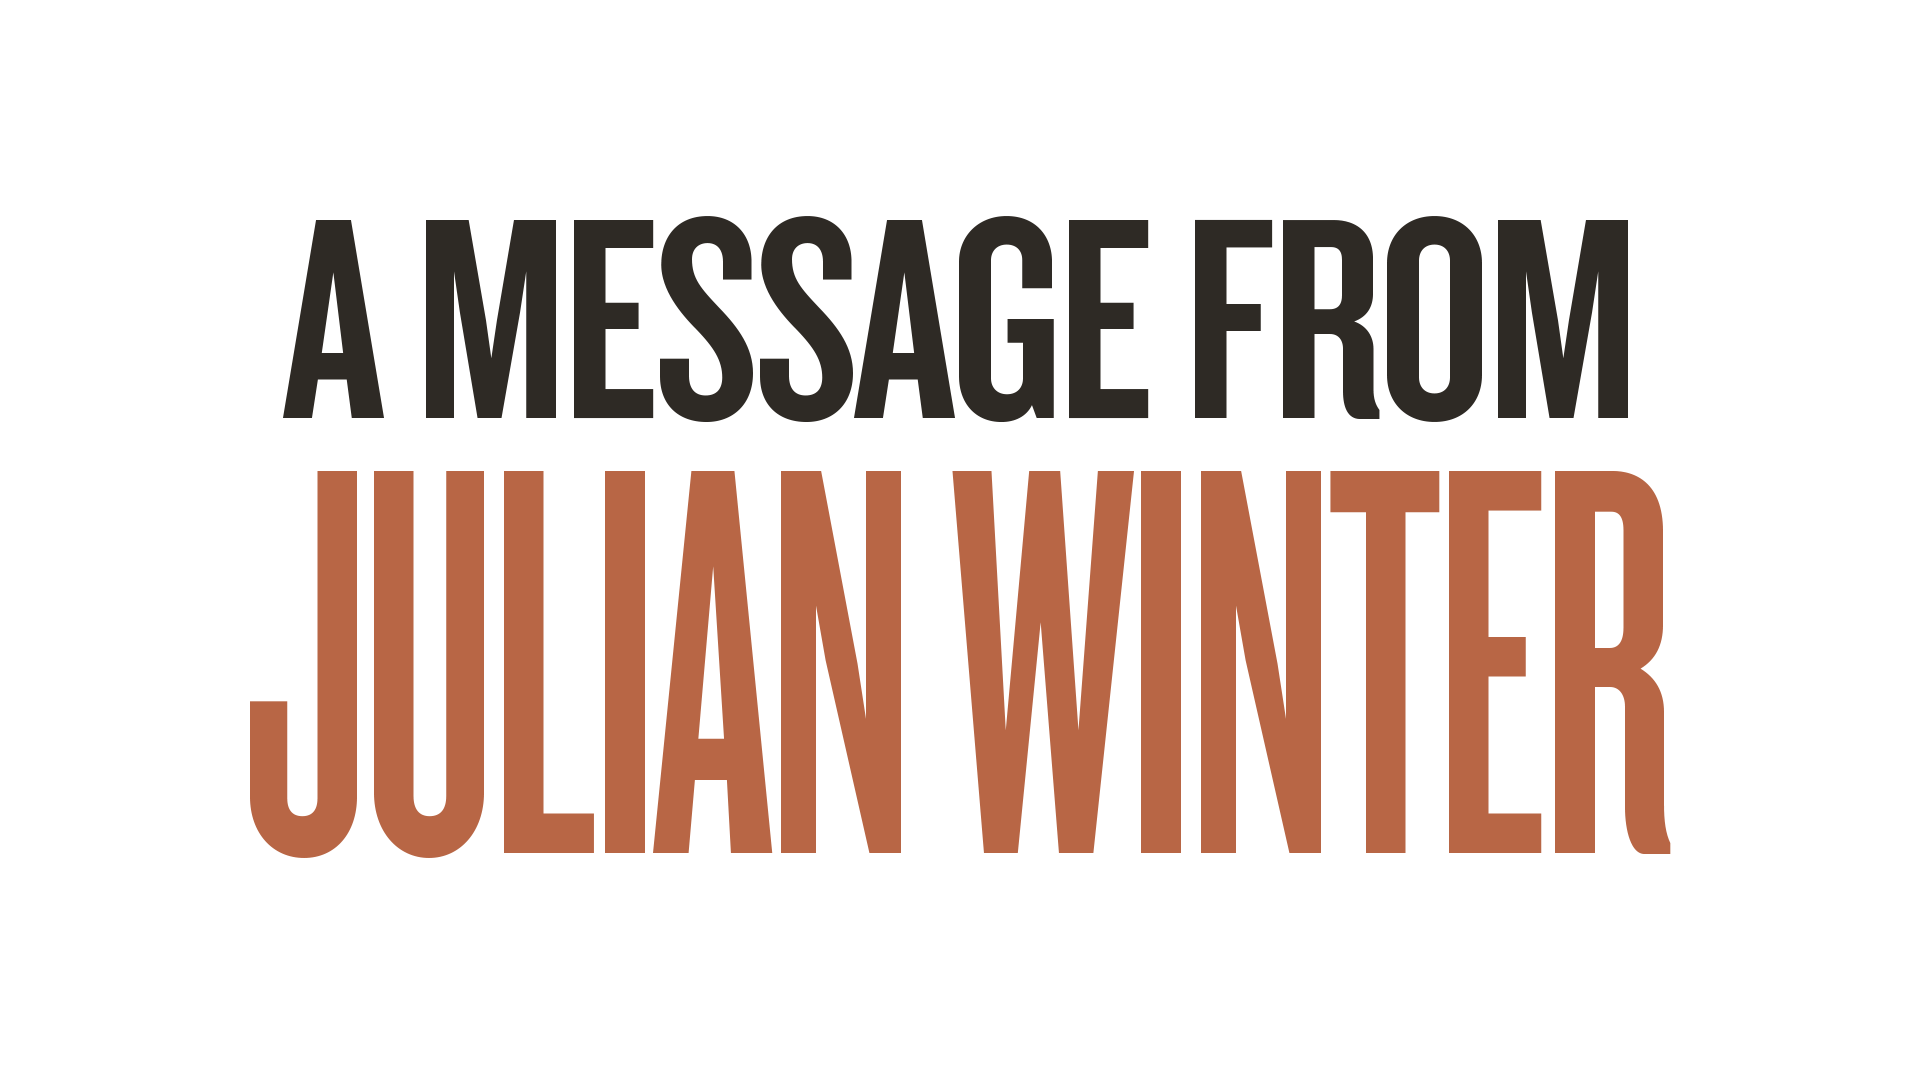 Julian Winter